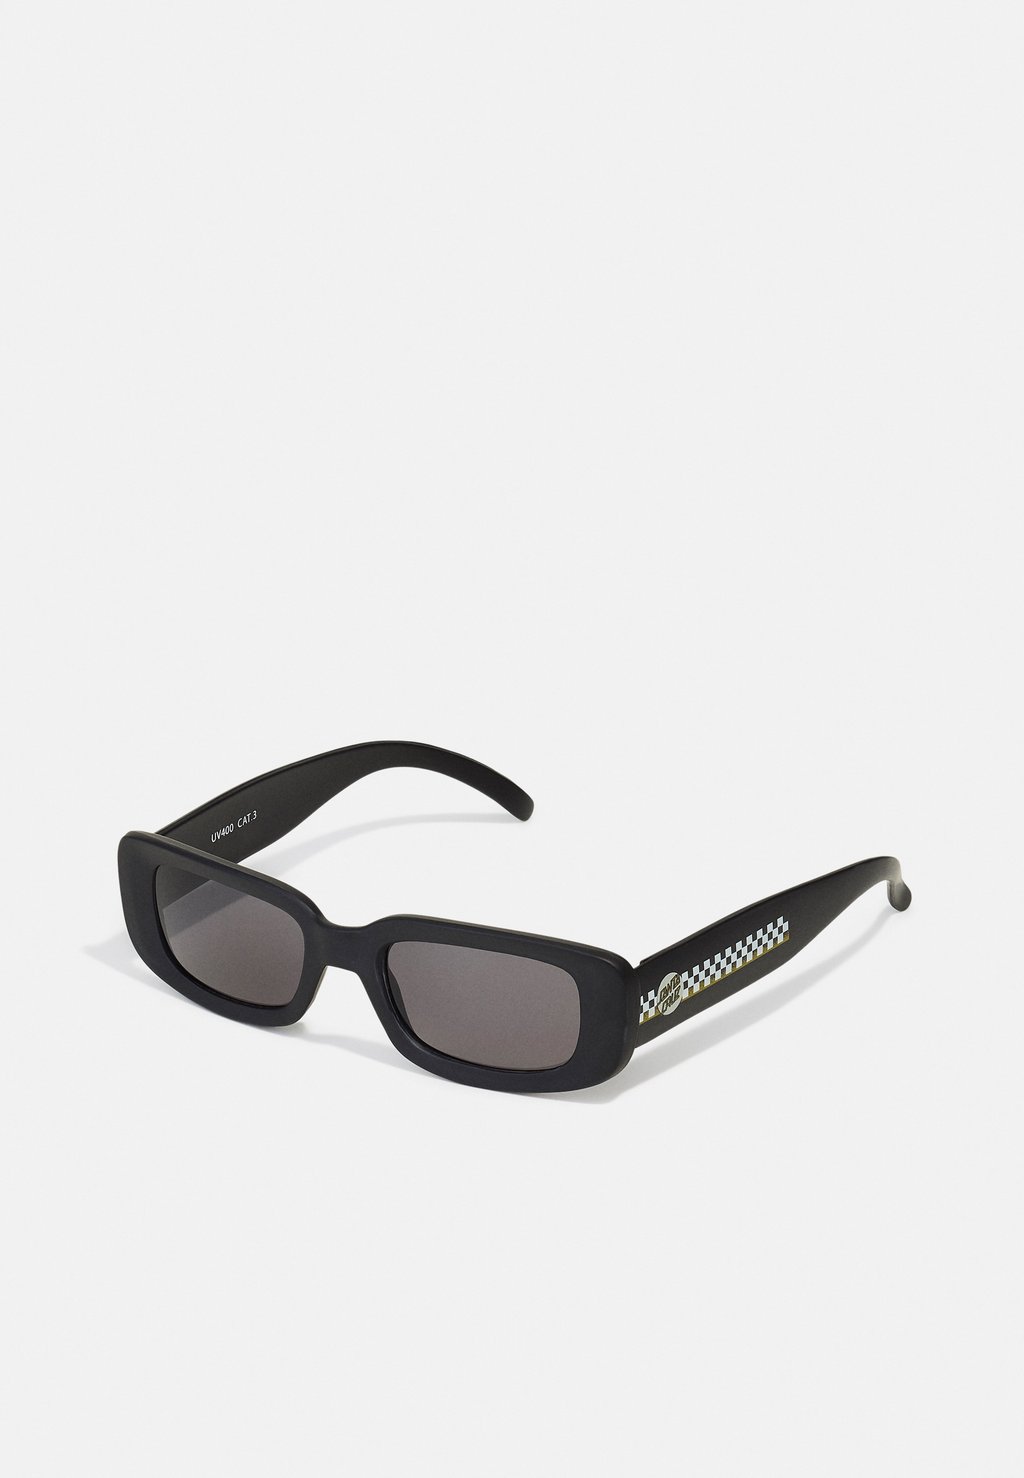 Солнцезащитные очки Santa Cruz, черный